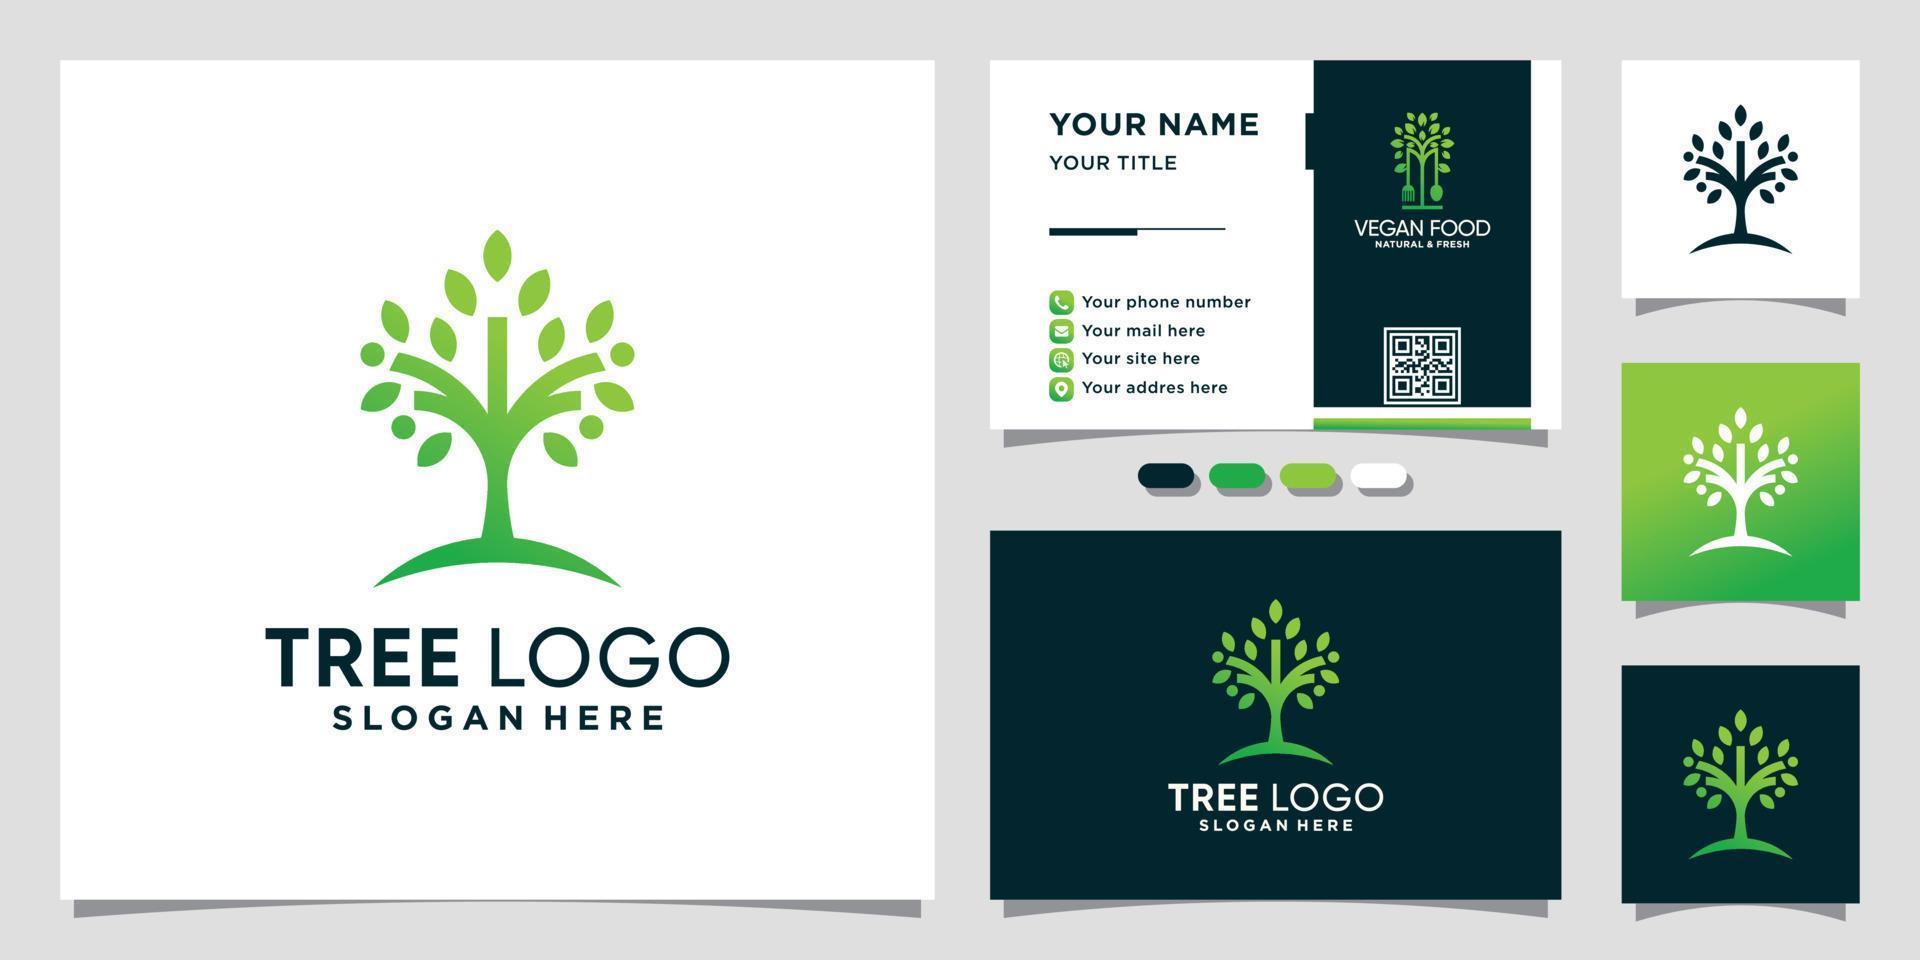 Baum-Natur-Logo mit einzigartigem Konzept und Visitenkarten-Design-Premium-Vektor vektor